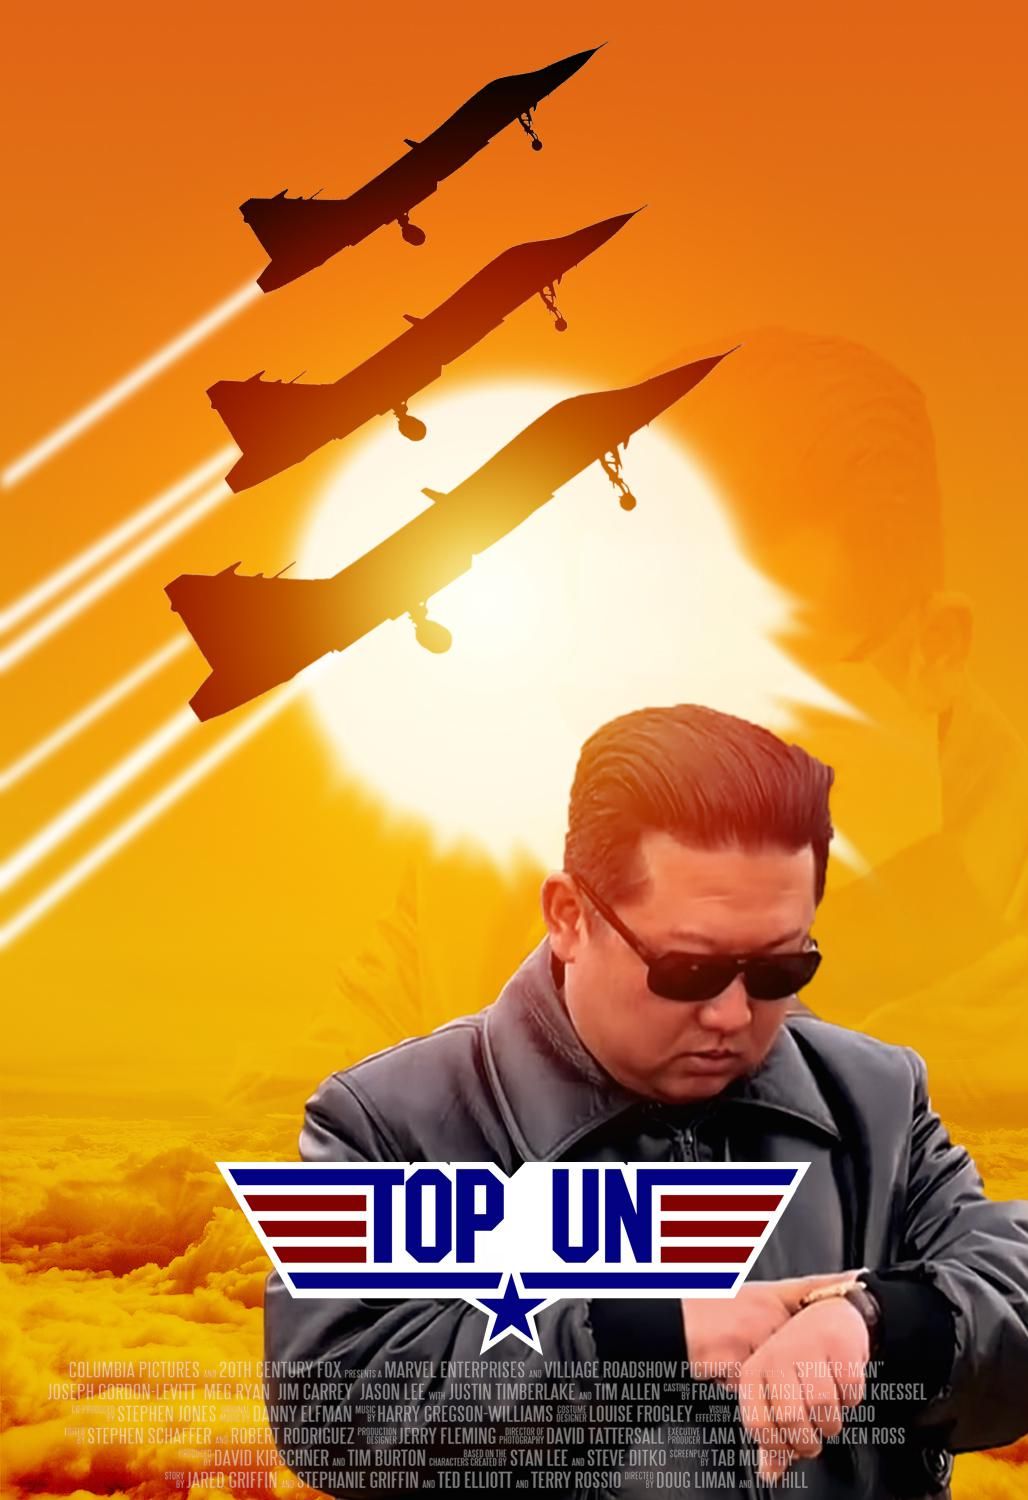 North Korea presents: Top Un